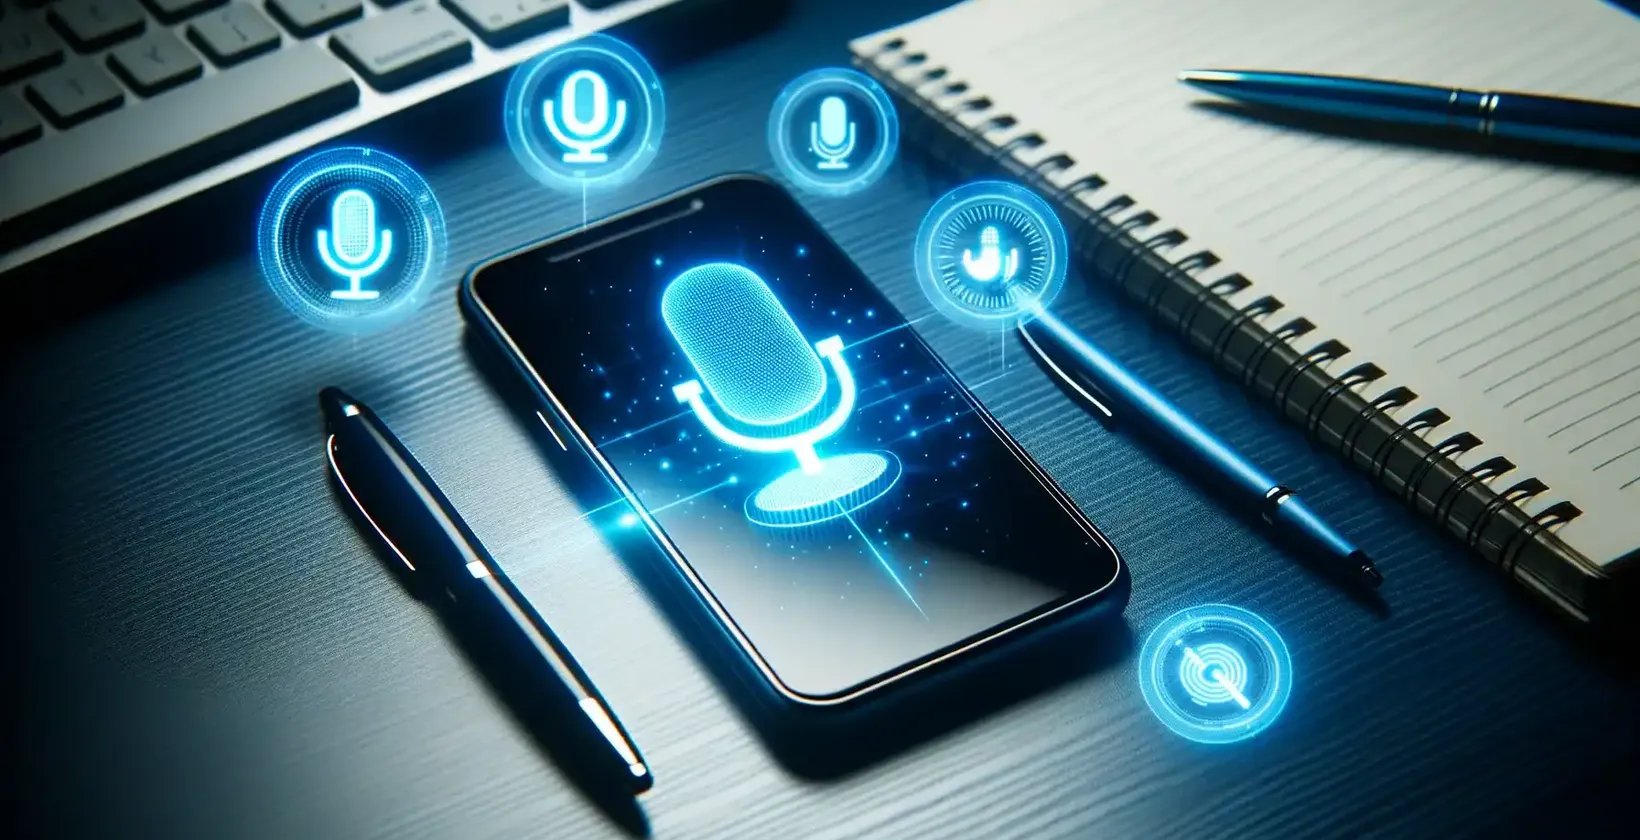 Szöveg hozzáadása a videóhoz Samsung készülékeken, egy Samsung okostelefonon, amely hangutasításos szimbólumokat jelenít meg egy asztalon.